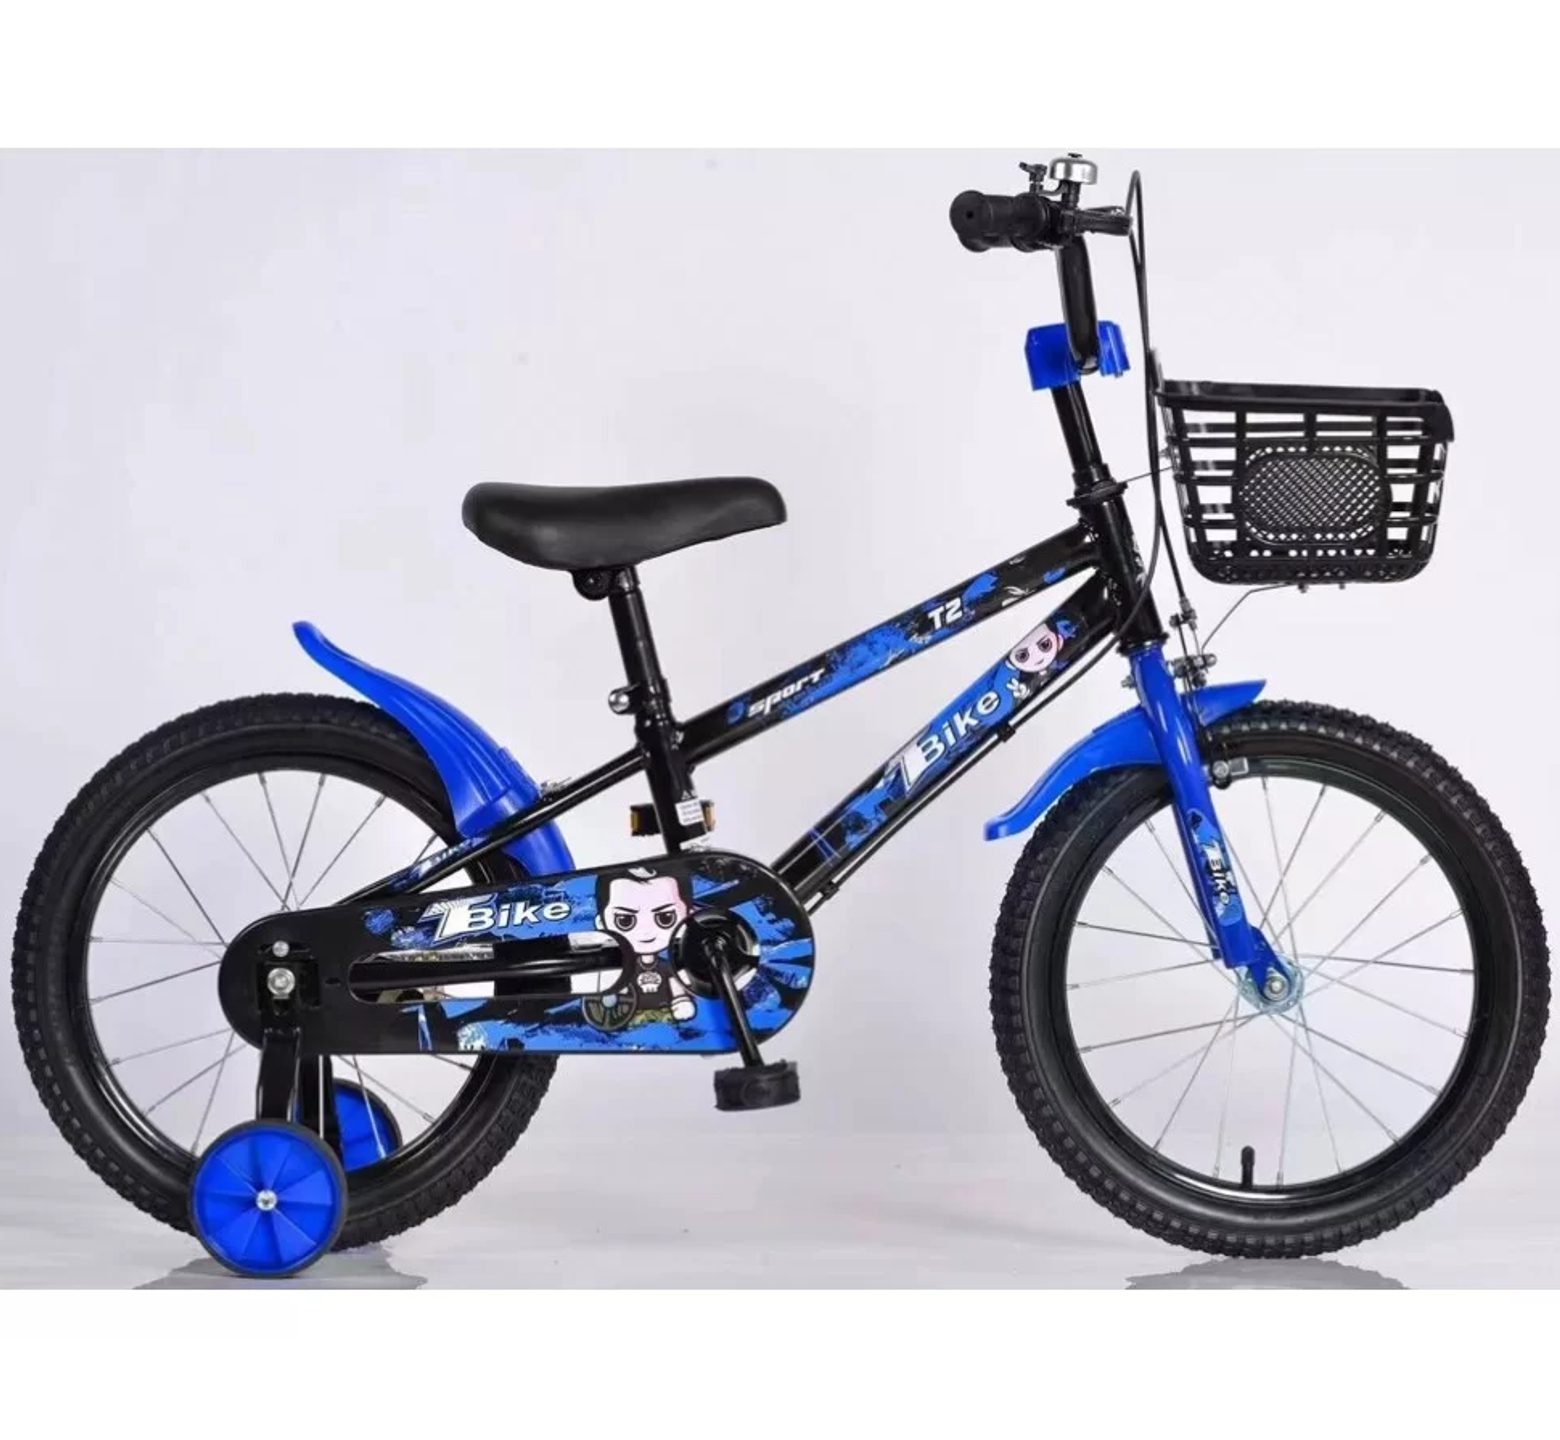 Ποδήλατο bmx T2 12 - 16 ιντσών με καλάθι σε μαύρο μπλε χρώμα